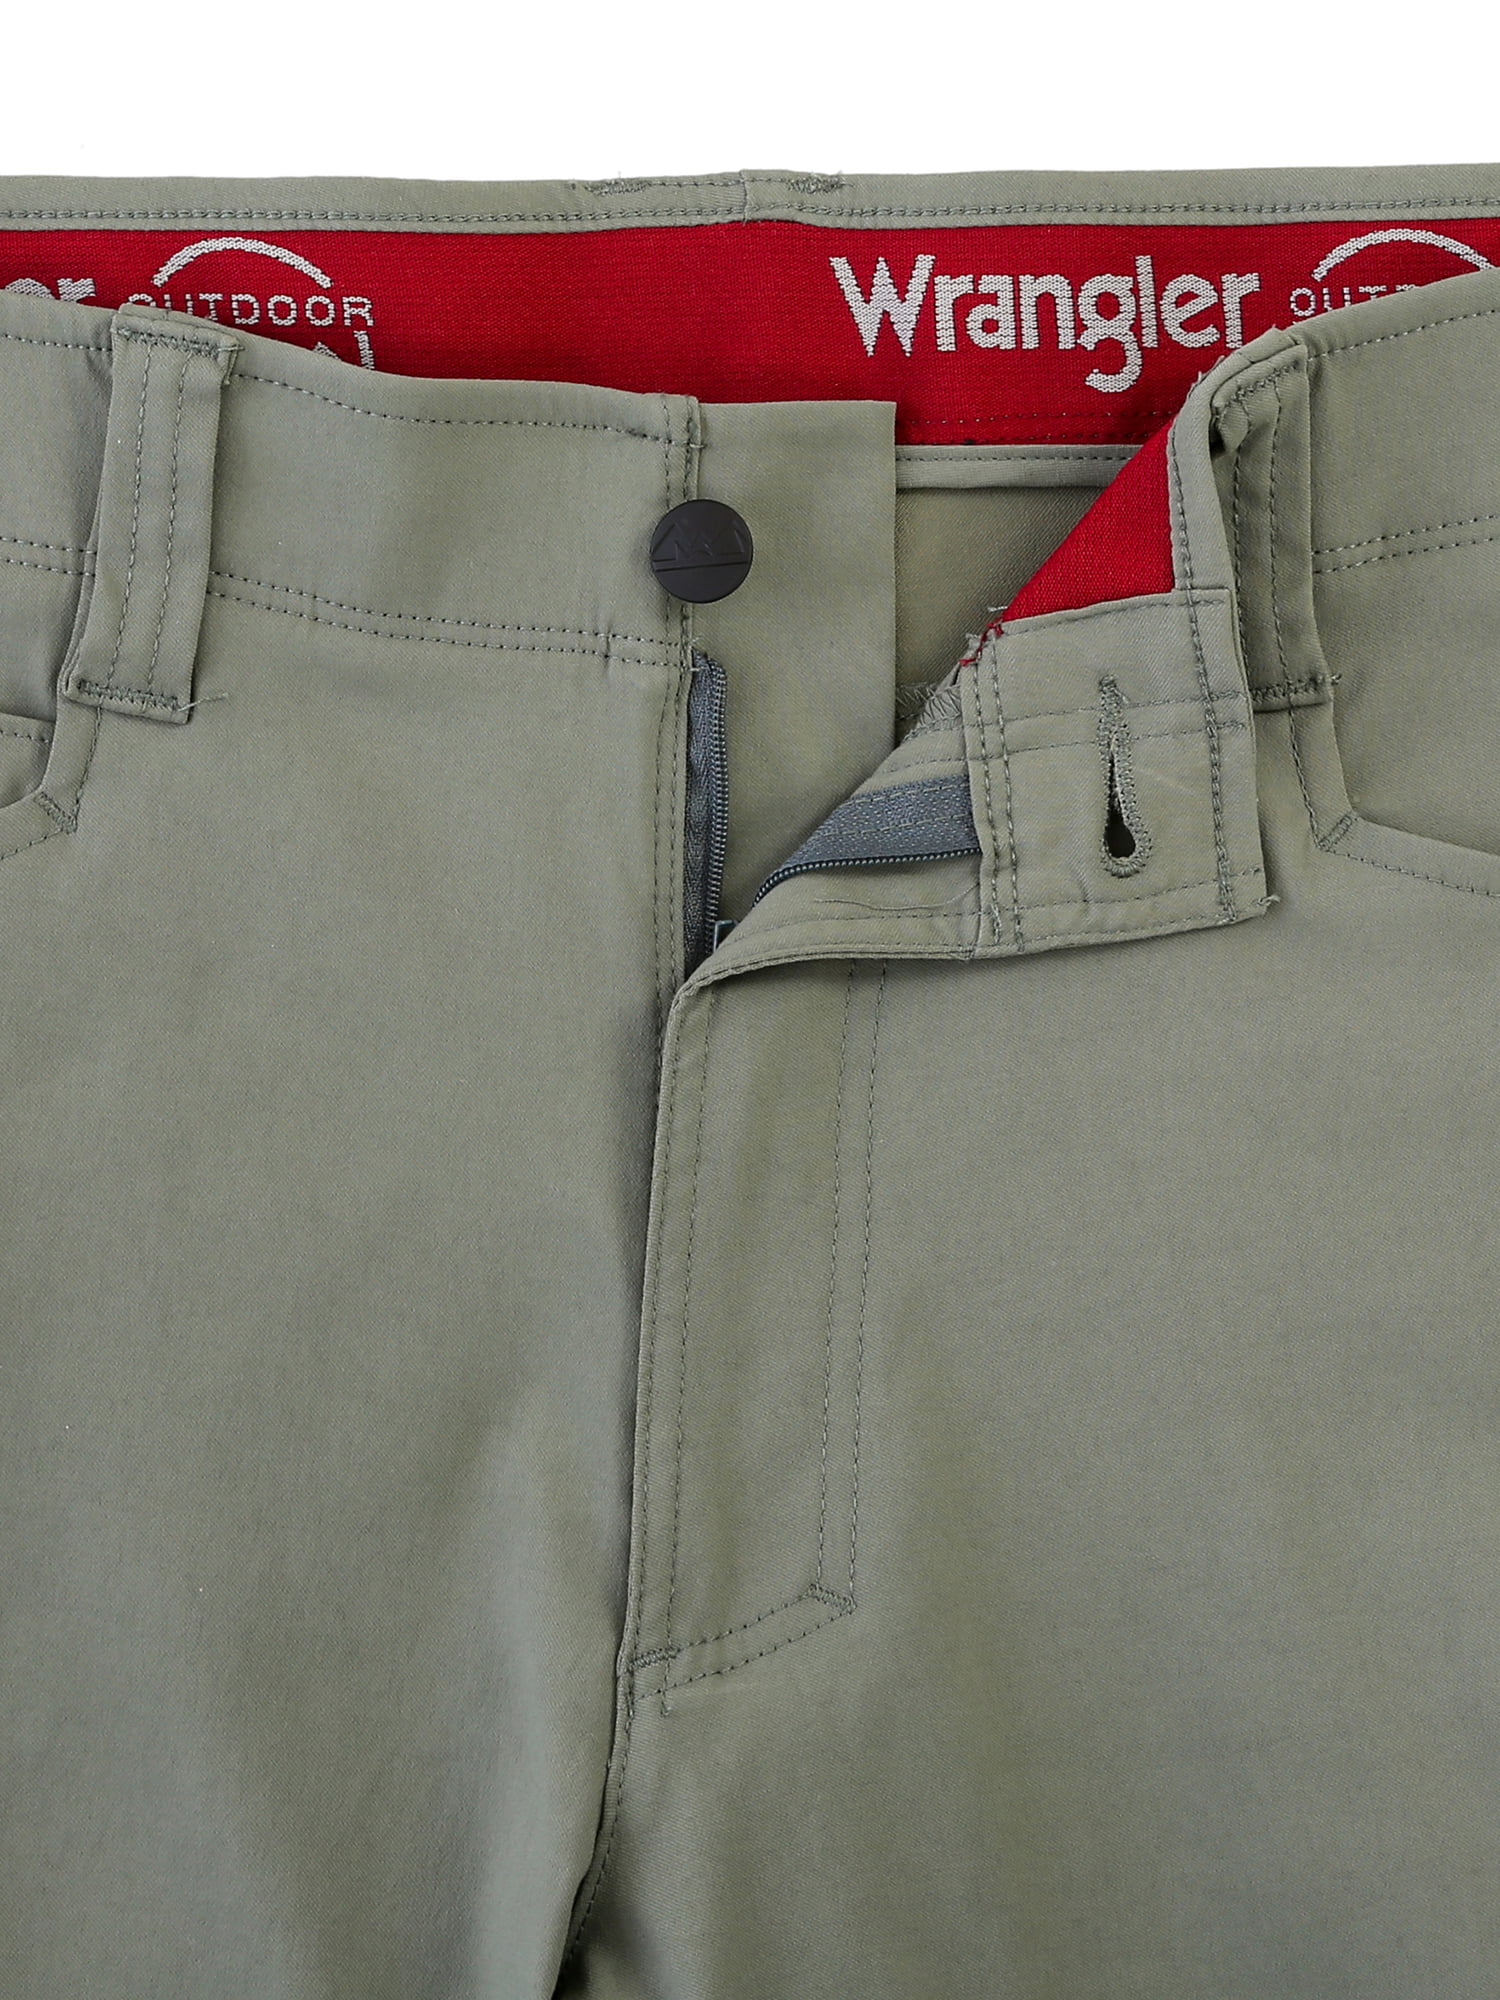 wrangler comfort flex pants